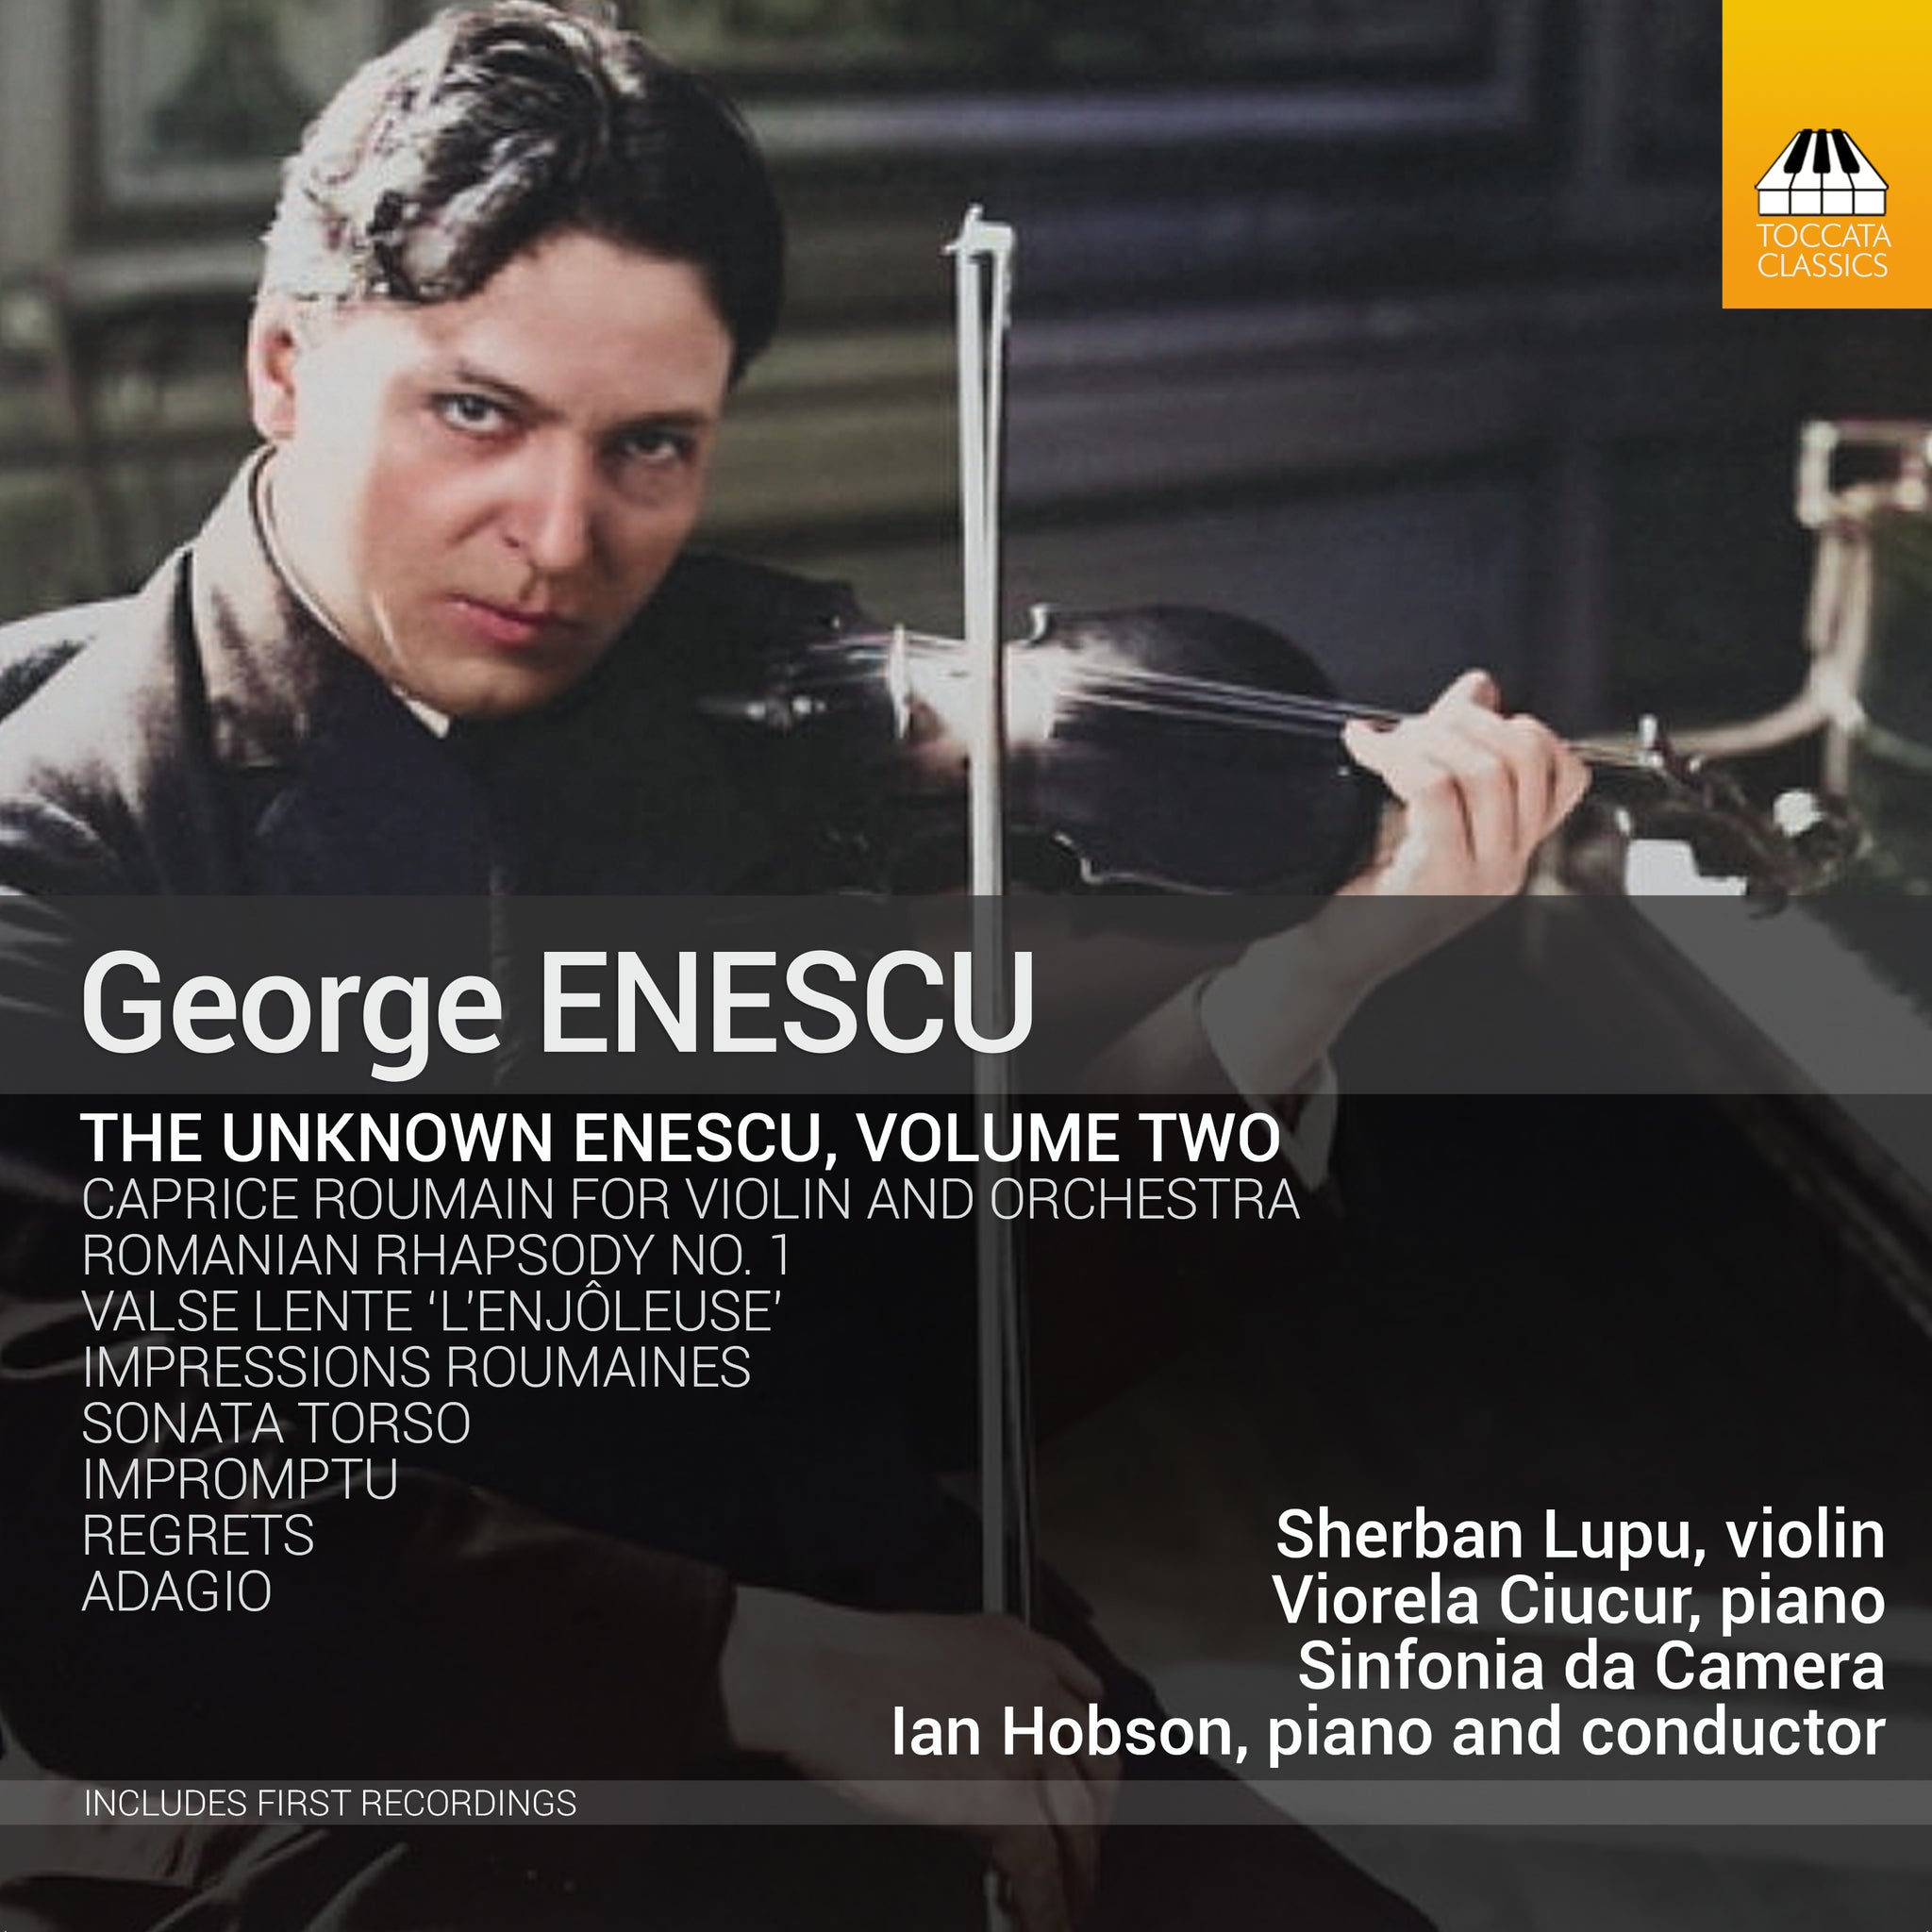 The Unknown Enescu, Vol. 2 / S. Lupu, Ciucur, Hobson, Sinfonia da Camera